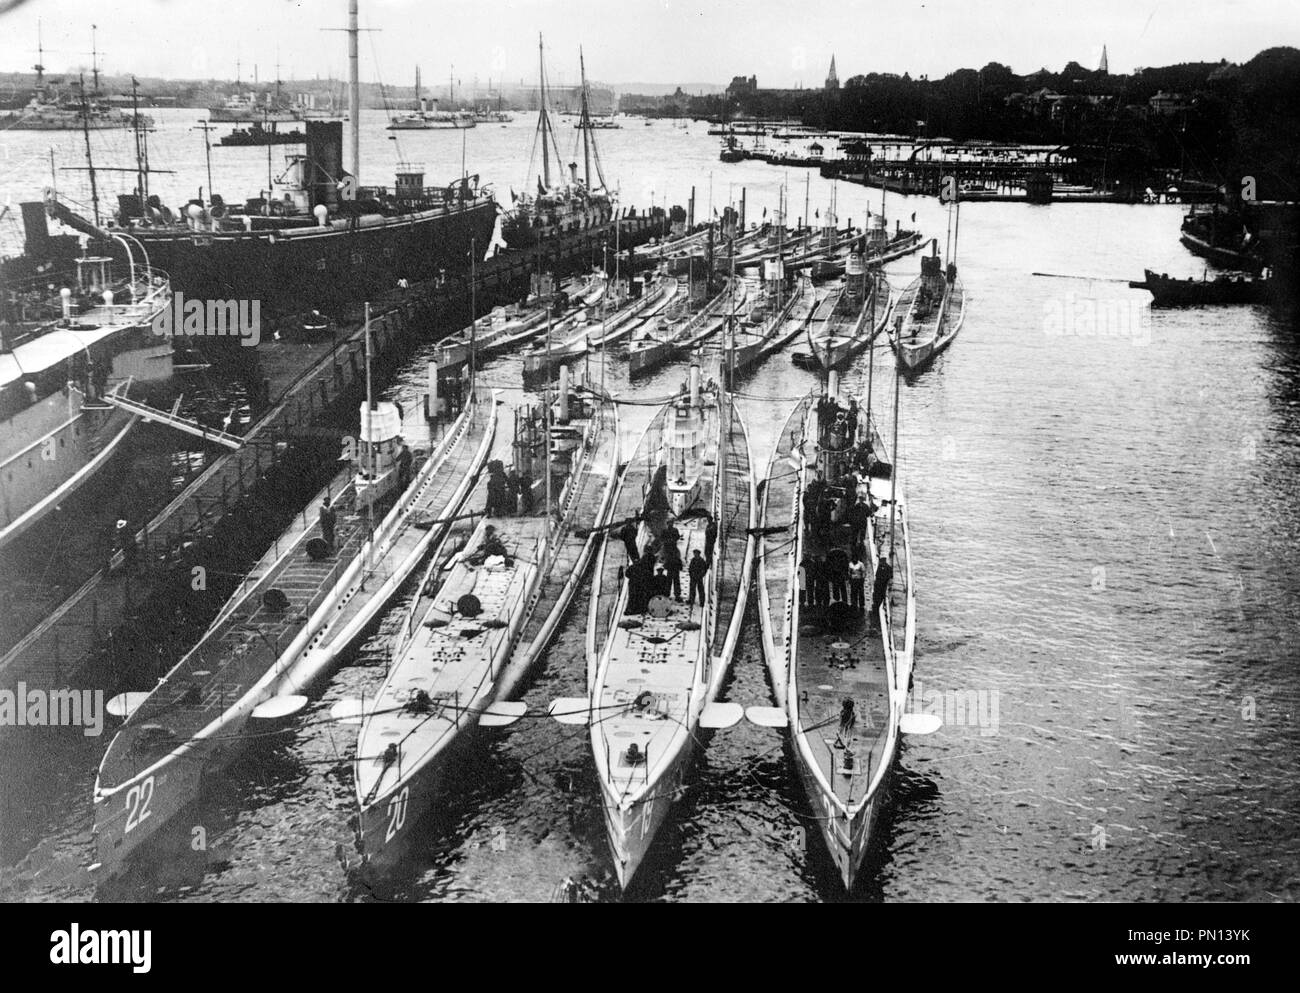 Sommergibili tedeschi nel porto. Sommergibili tedeschi in un porto. Fila anteriore (da sinistra a destra): U-22, U-20 (affondò la Lusitania), U-19 e U-21. Fila posteriore (da sinistra a destra): U-14, U-10 e U-12 Foto Stock